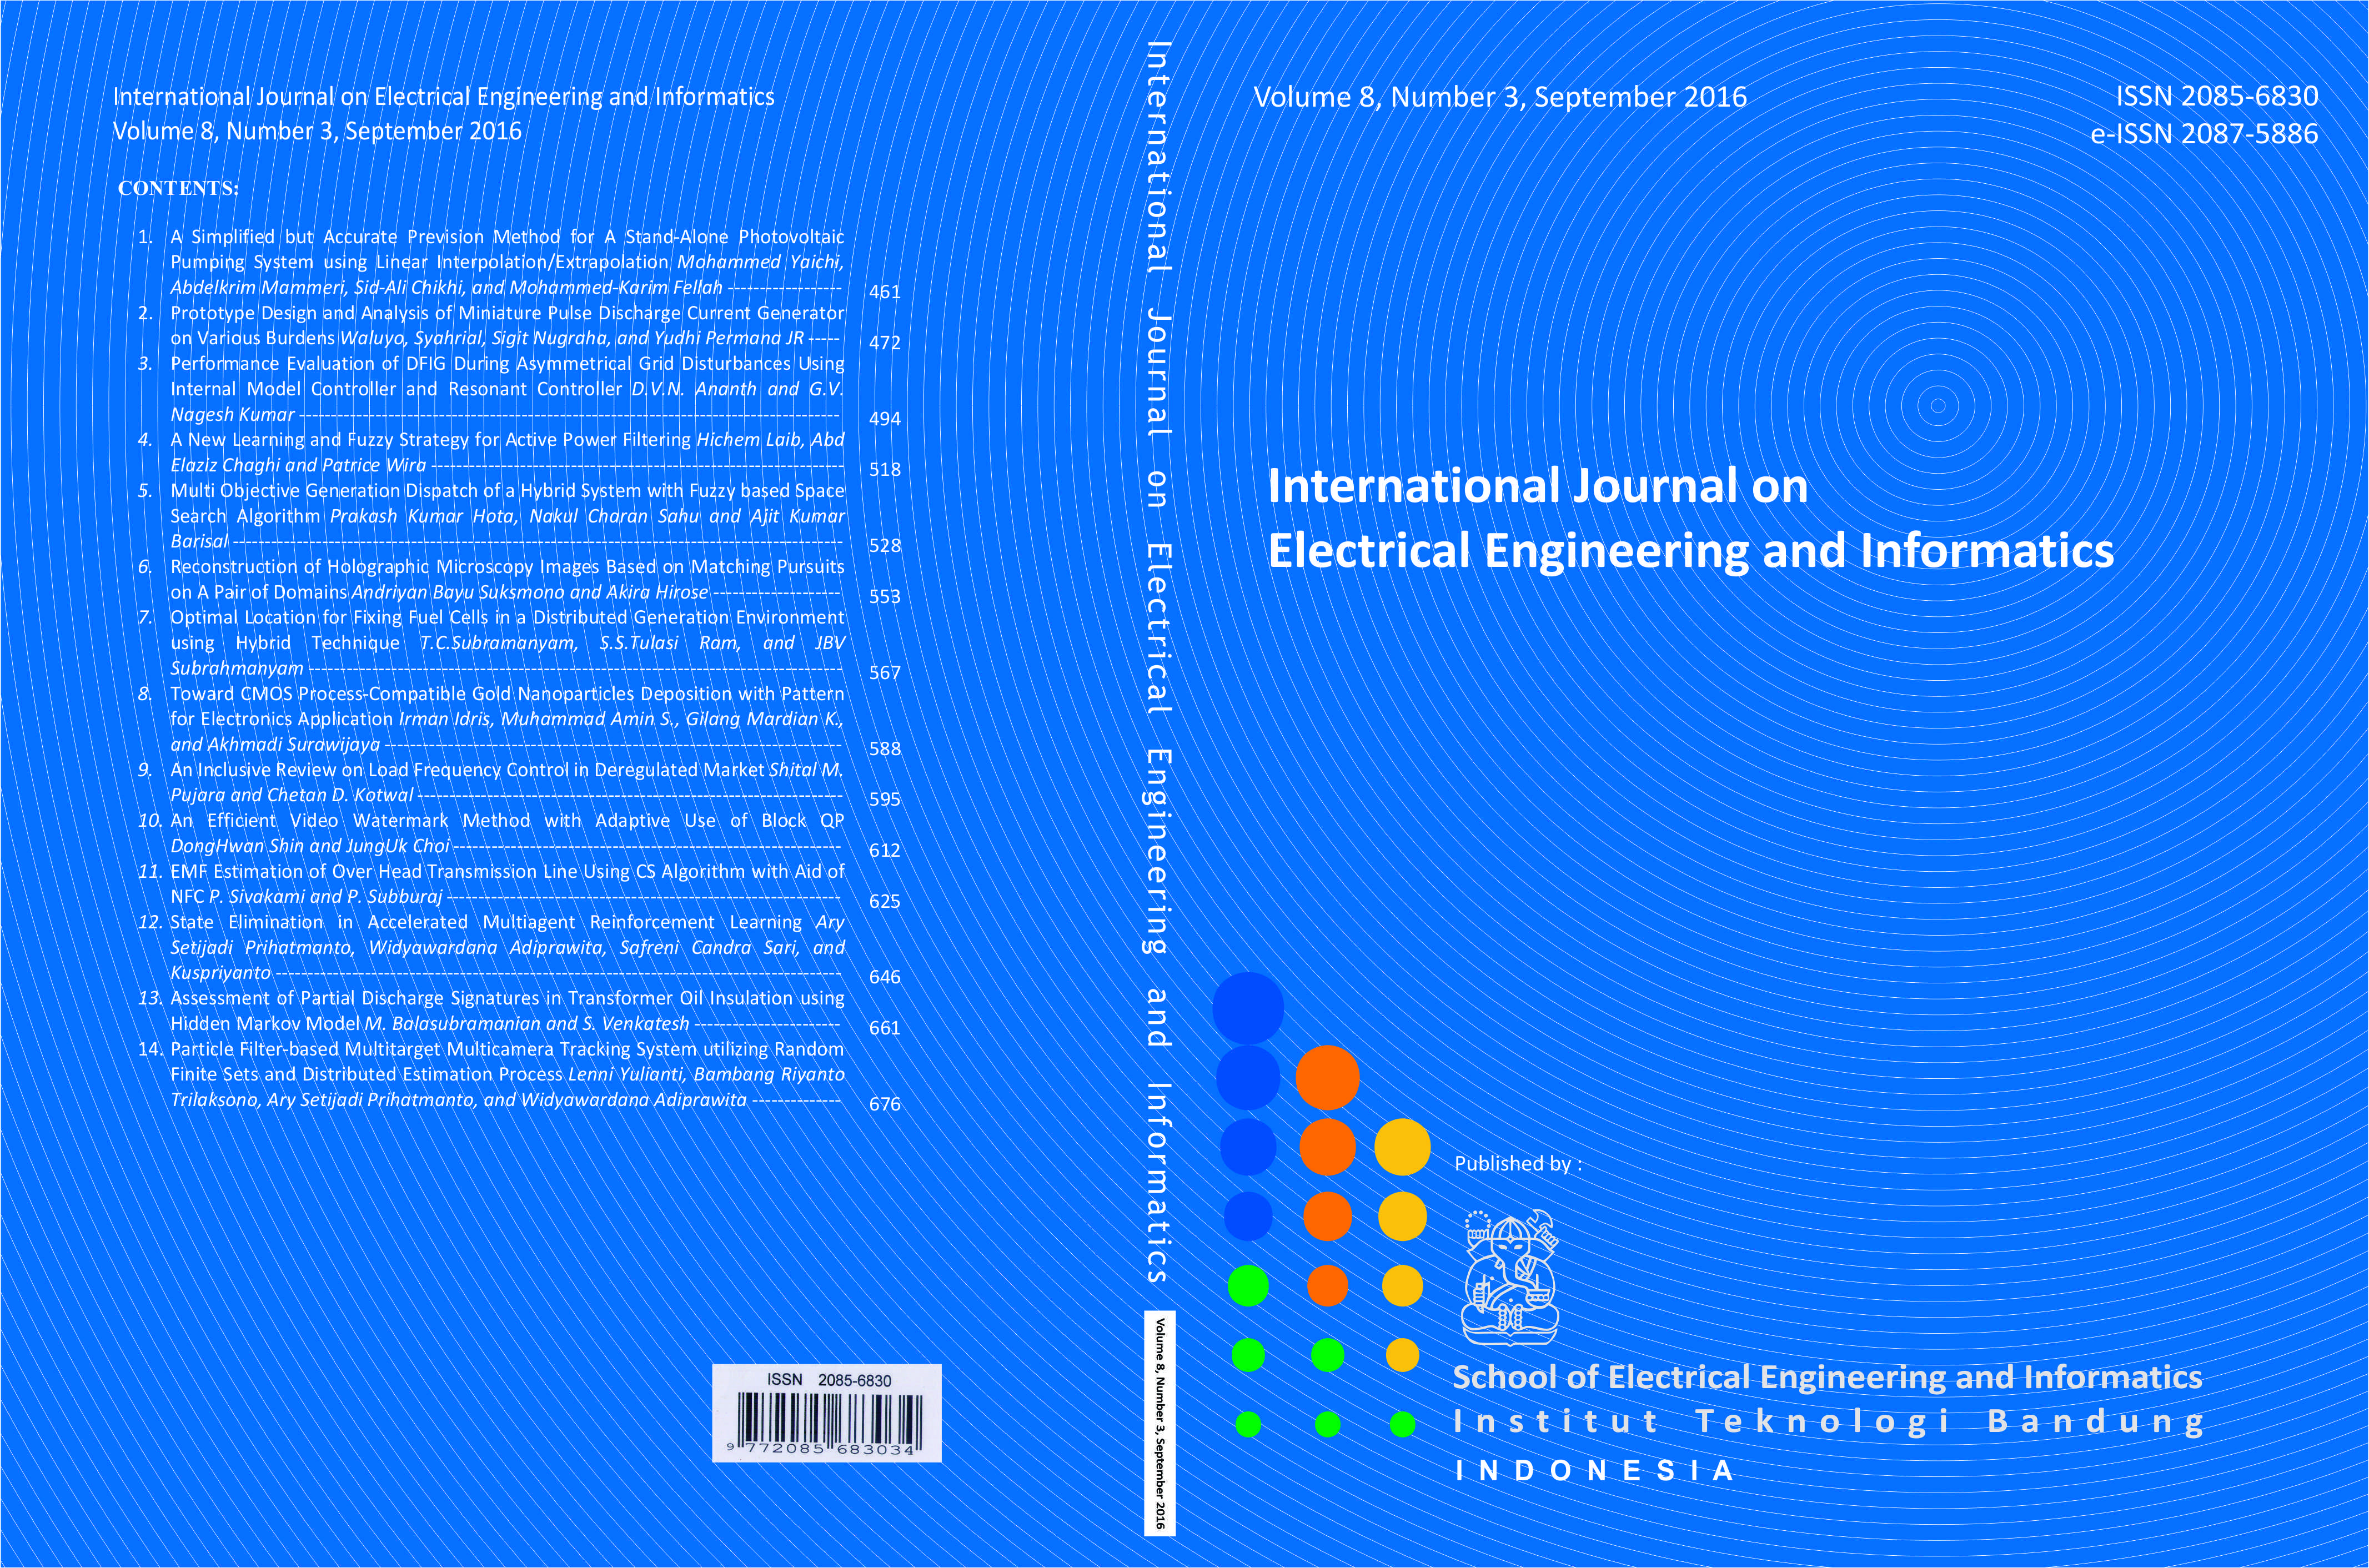 Journal cover Vol. 8 No. 3 September 2016